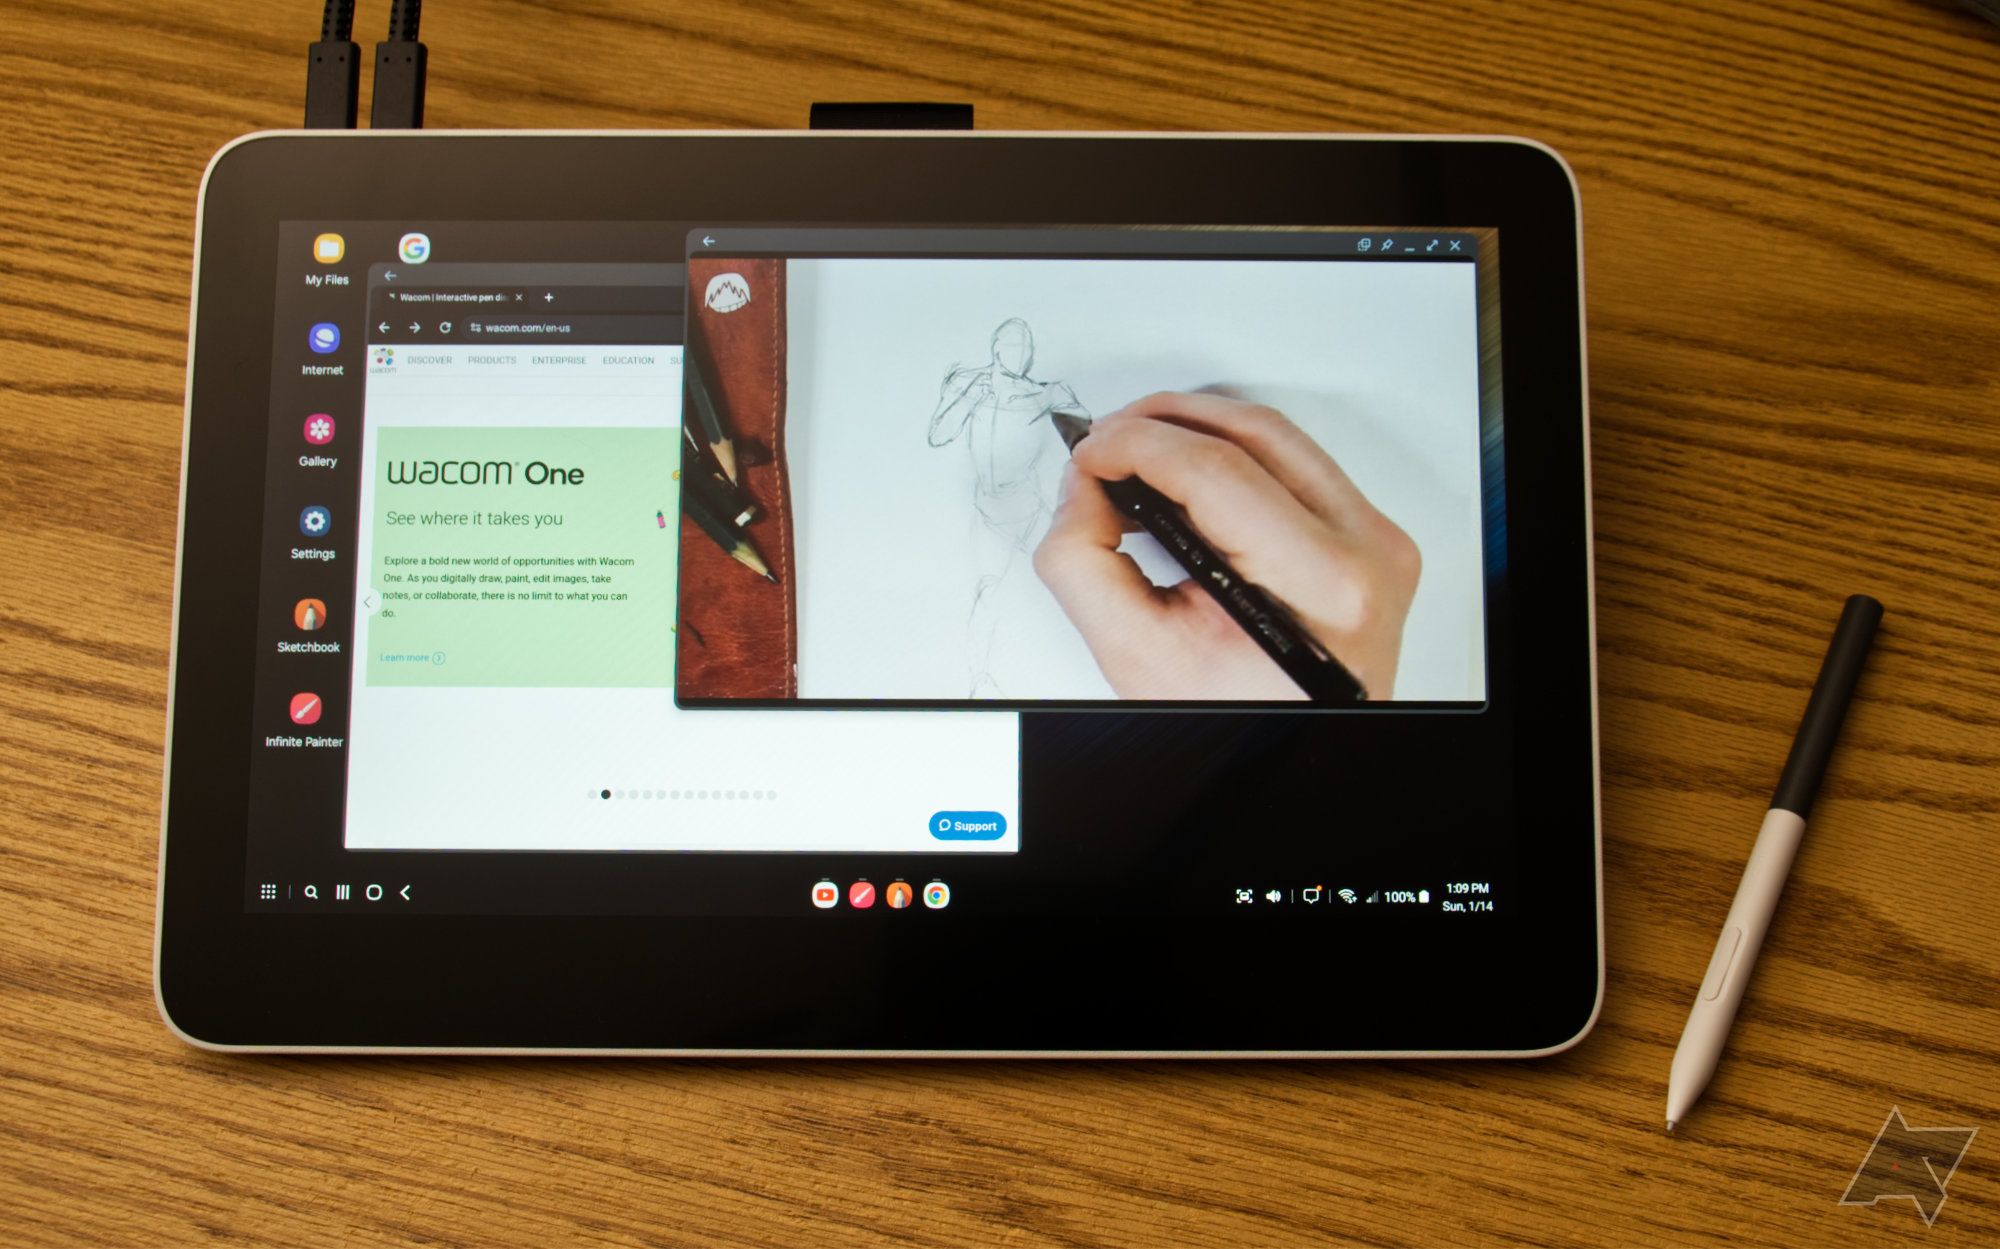 Wacom One 13 Touch com desktop DeX mostrando um navegador e um vídeo do YouTube de uma pessoa desenhando uma figura humana